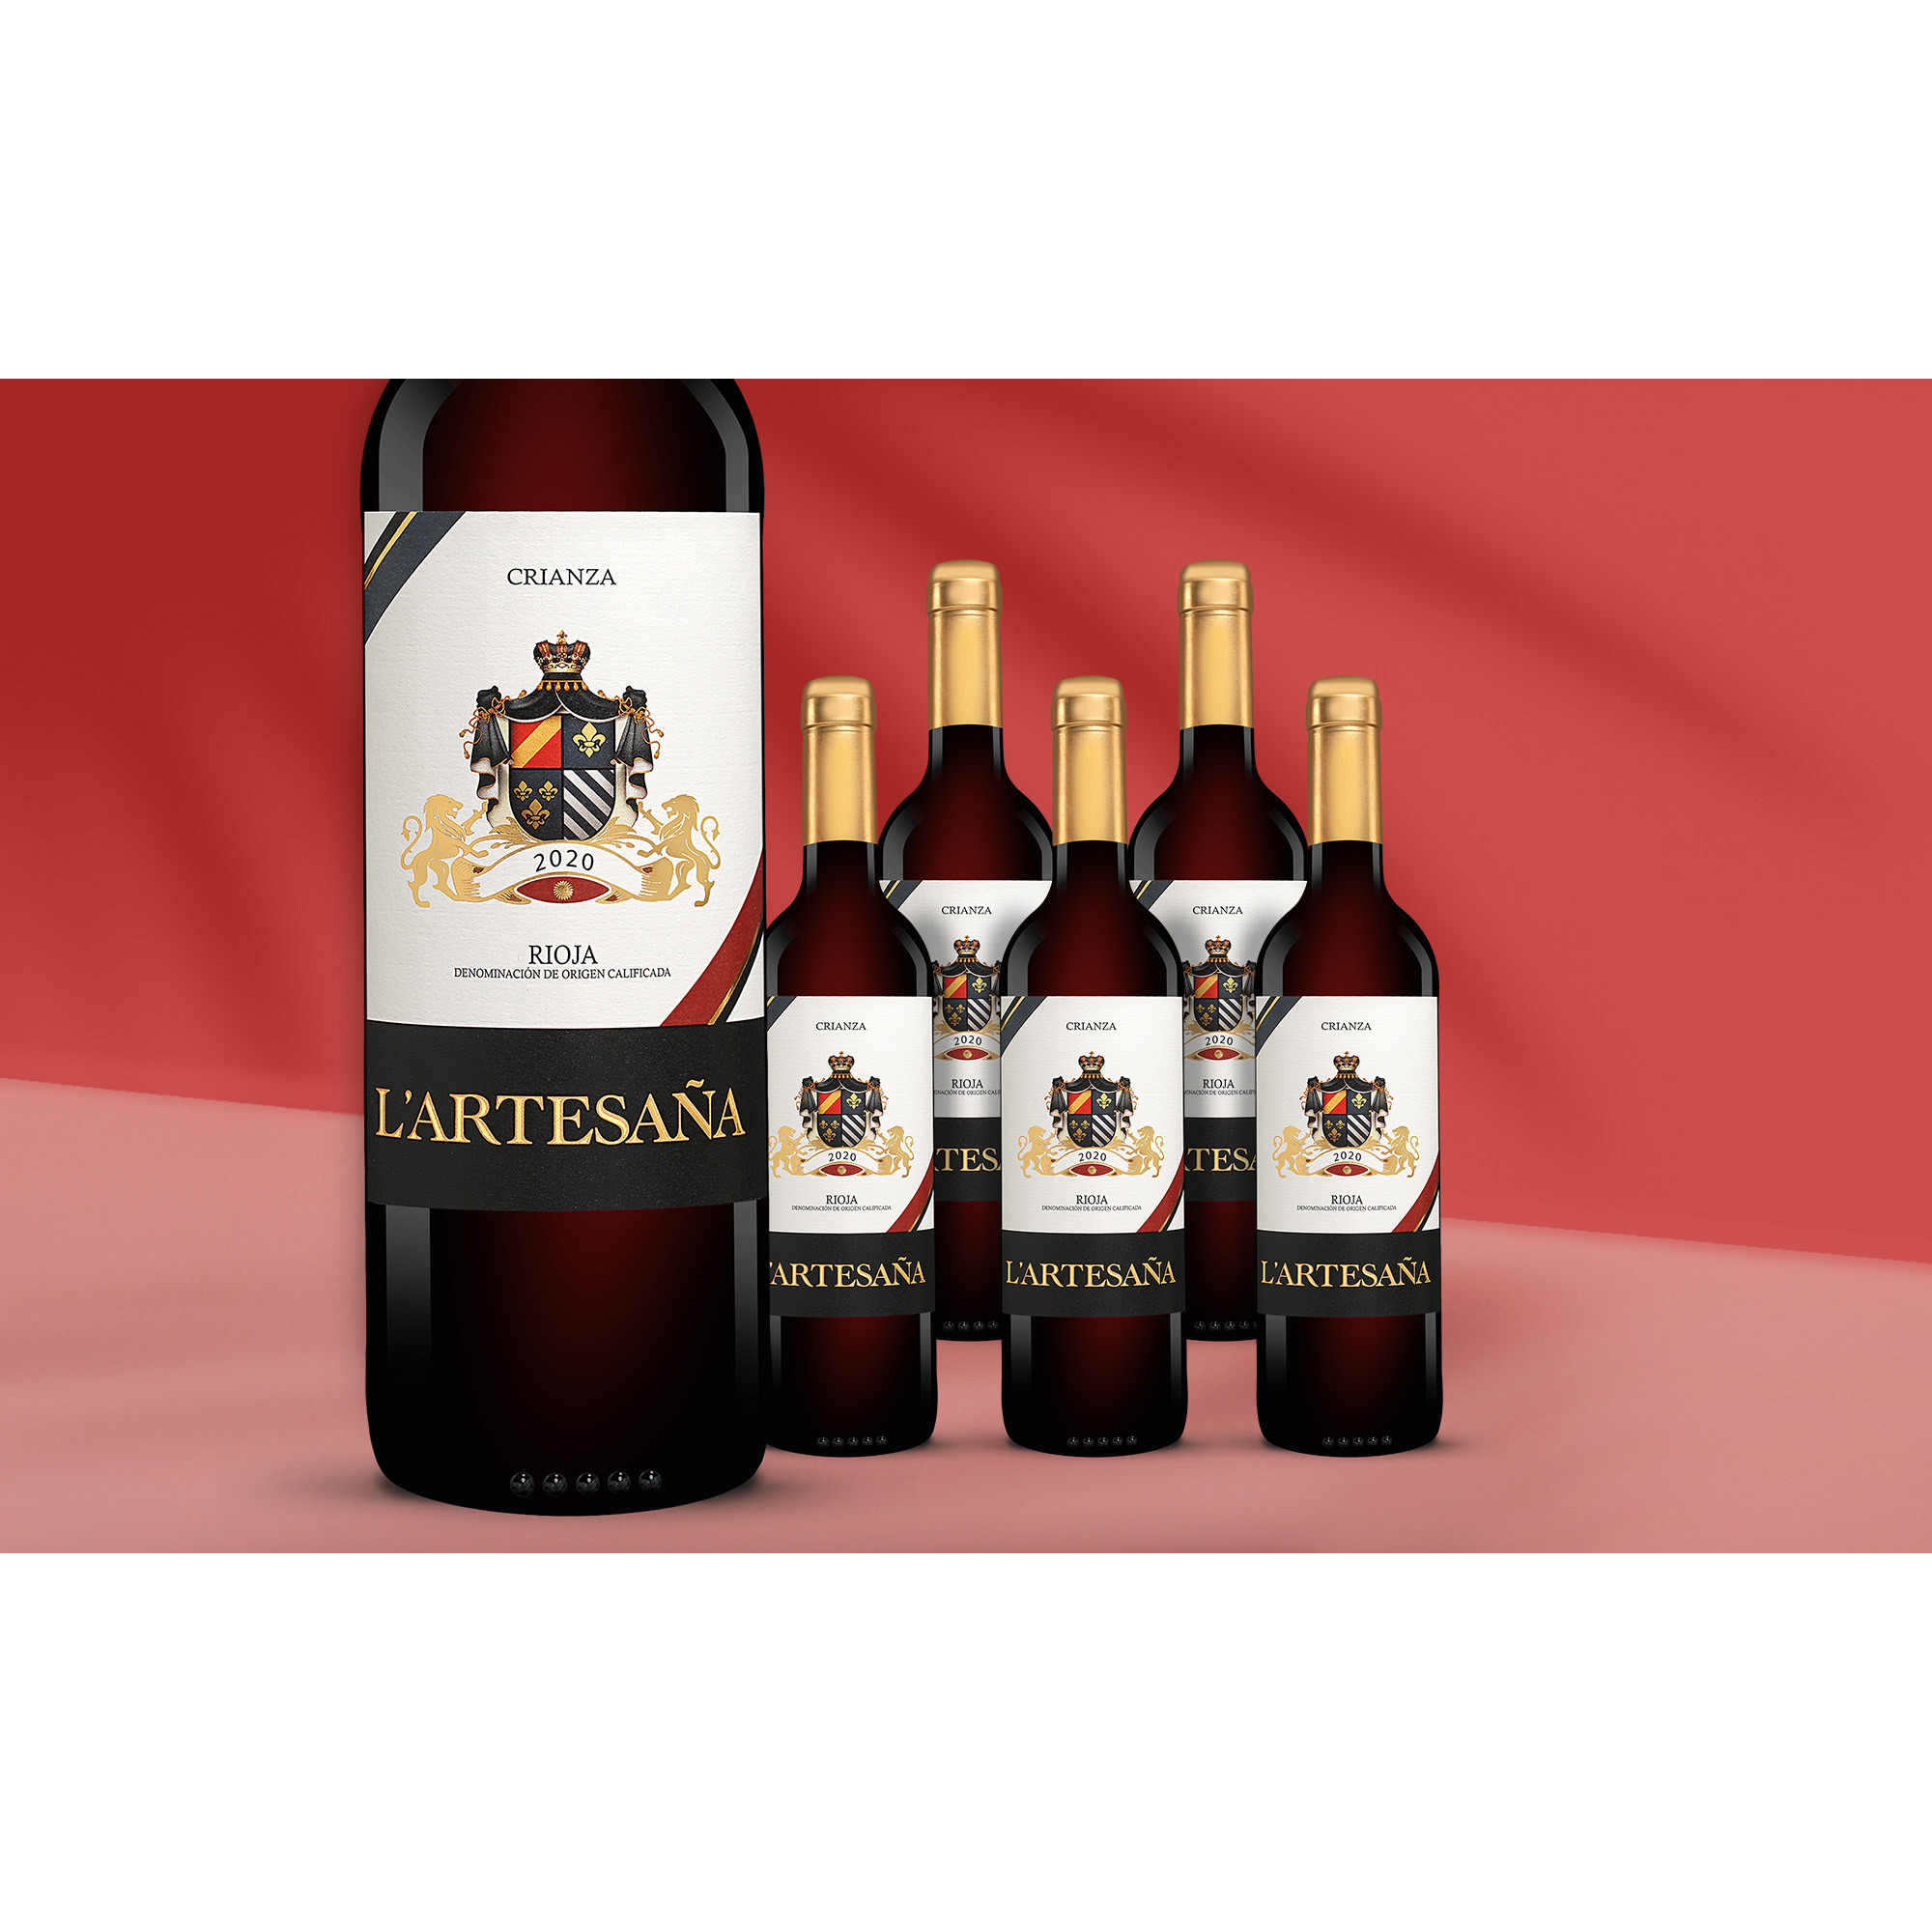 L'Artesaña Crianza 2020  414% Vol. Weinpaket aus Spanien